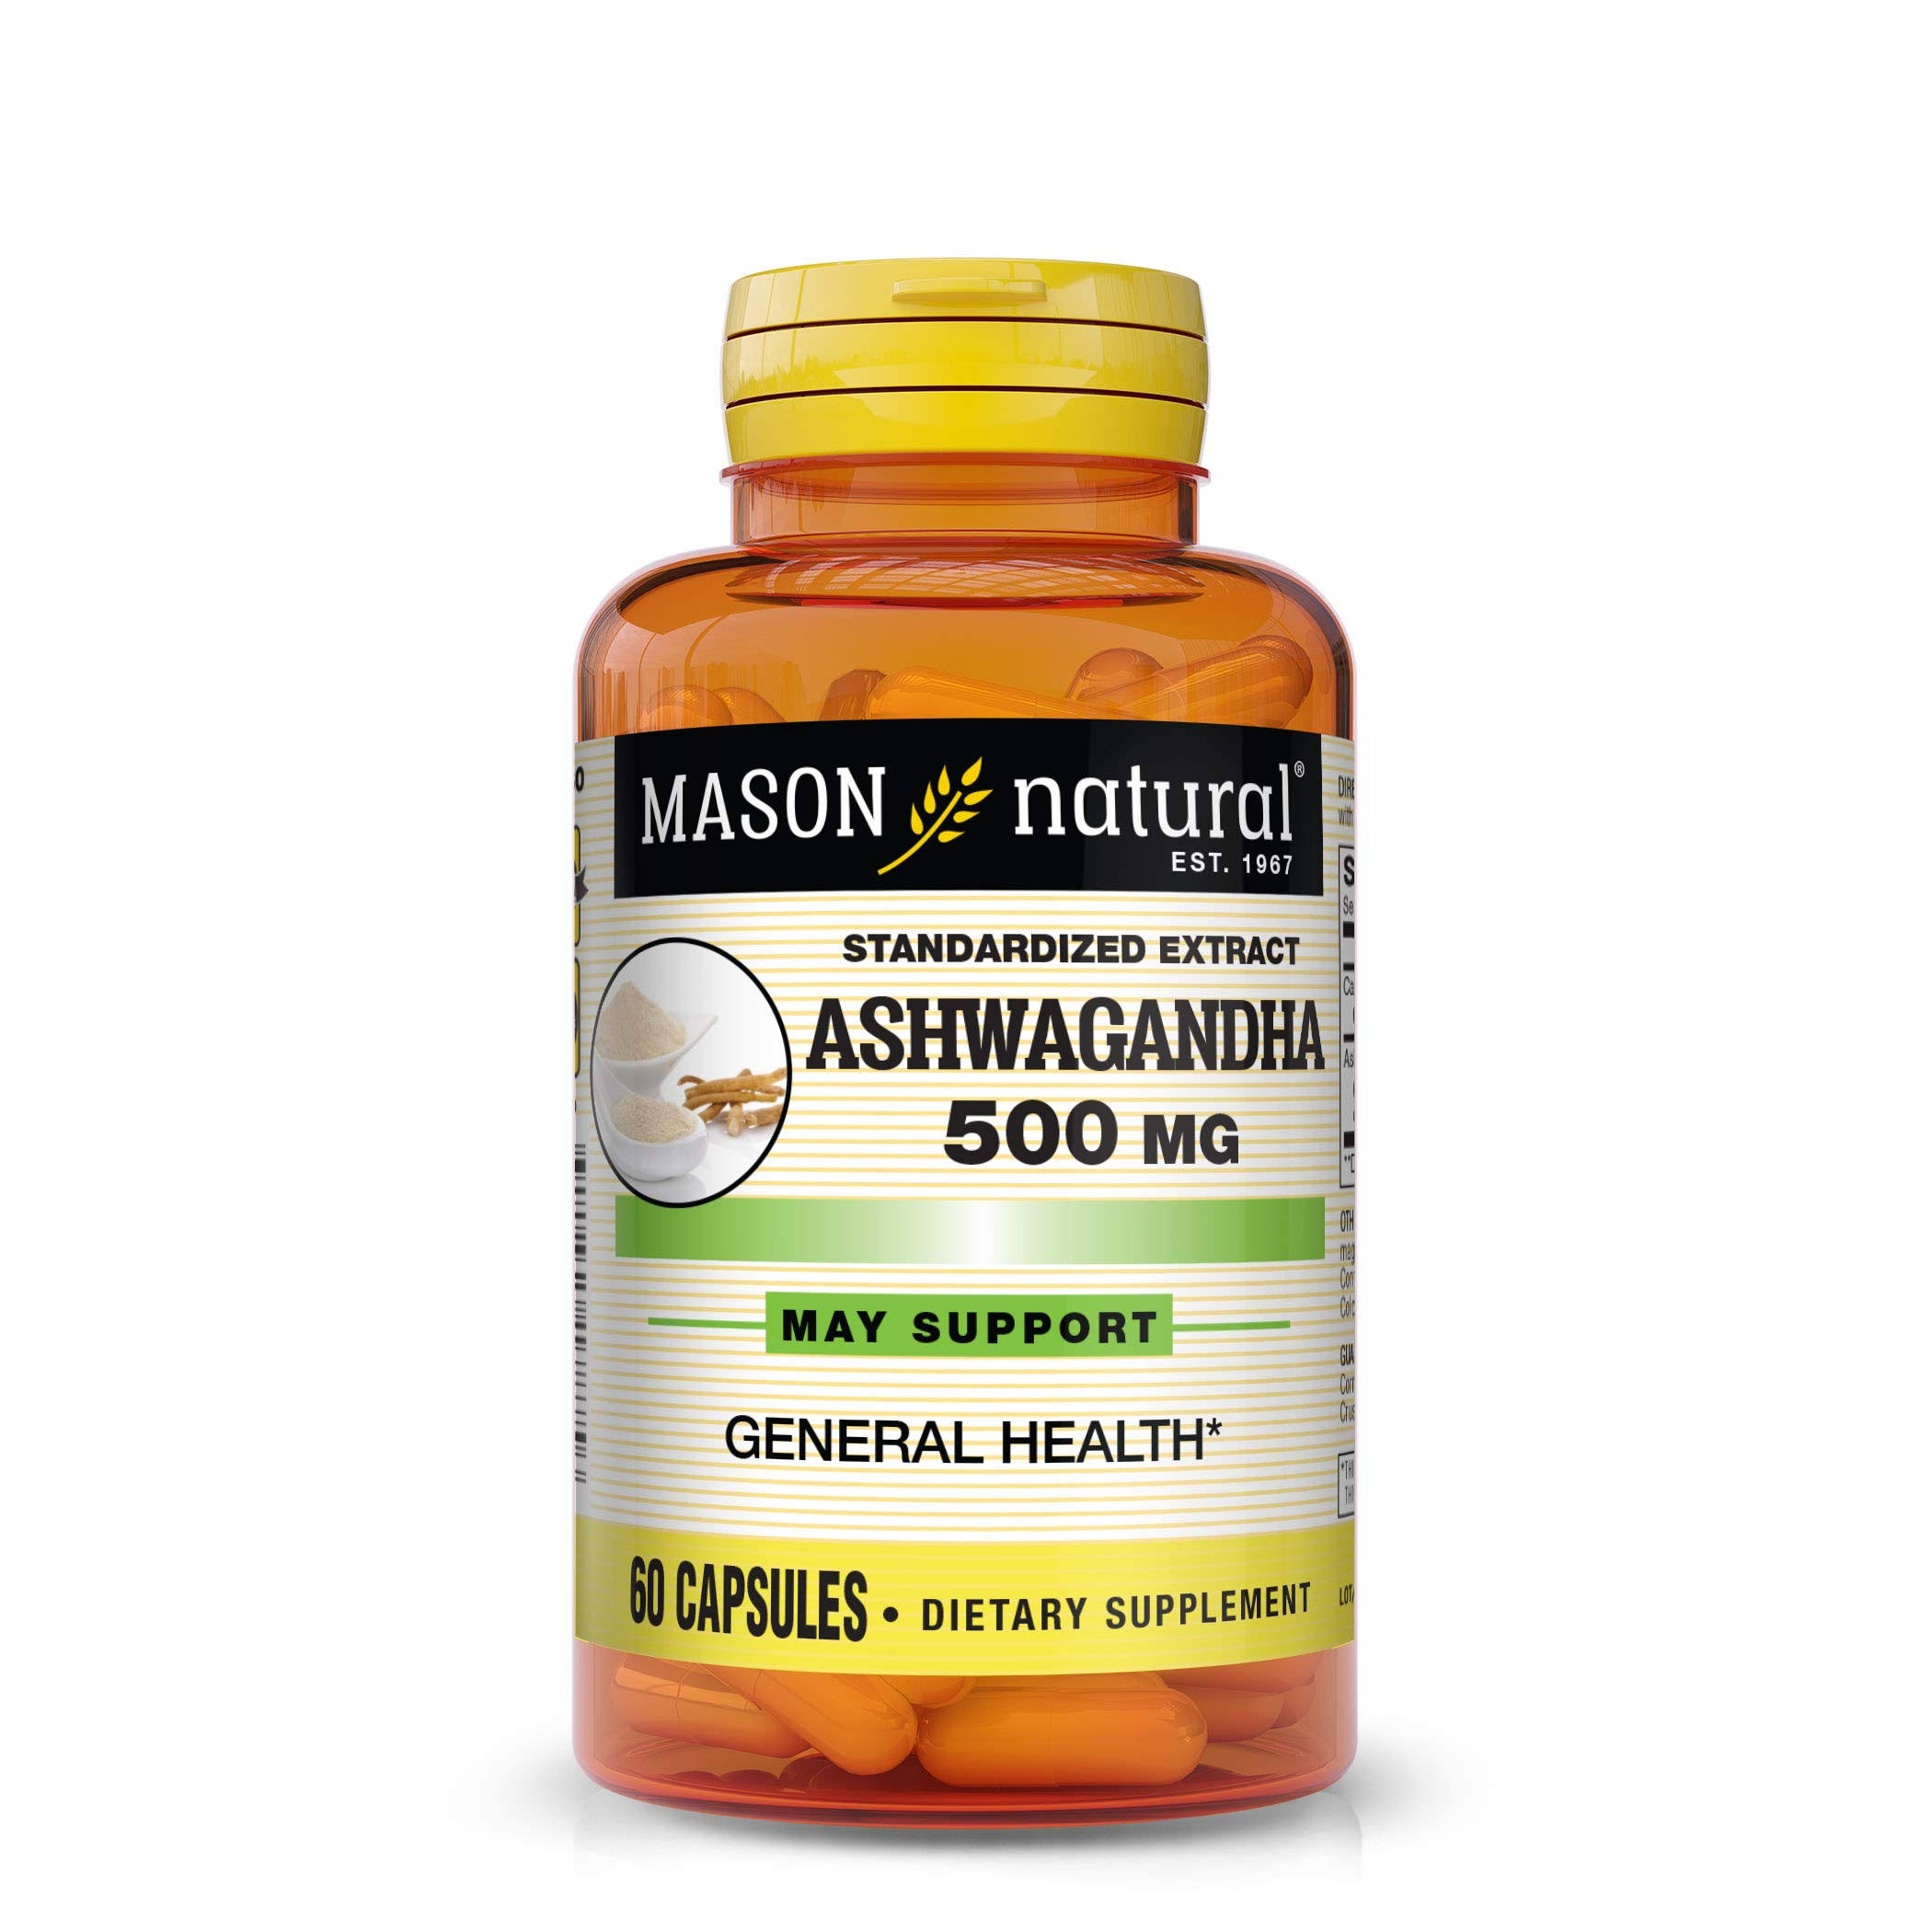 Mason Natural Ashwagandha 500 mg - Healthy Stress Response and Mood Support, Herbal Supplement, 60 Capsules